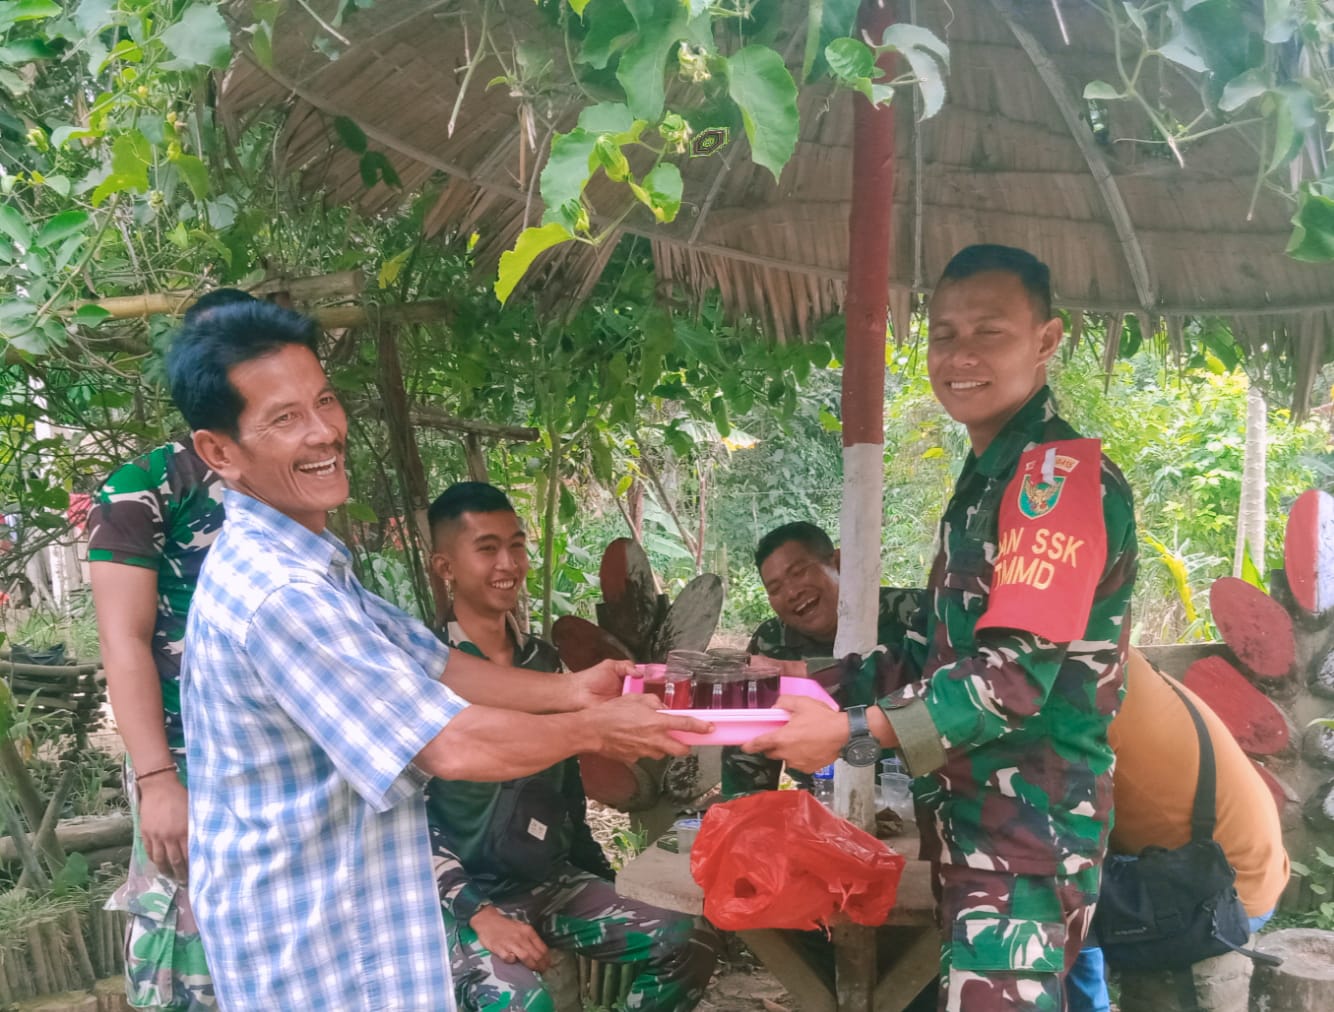 Ketua RT 04 Desa Muaro Sebapo Ucapkan Rasa Syukur Adanya Program TMMD ke-121 Kodim 0415/Jambi